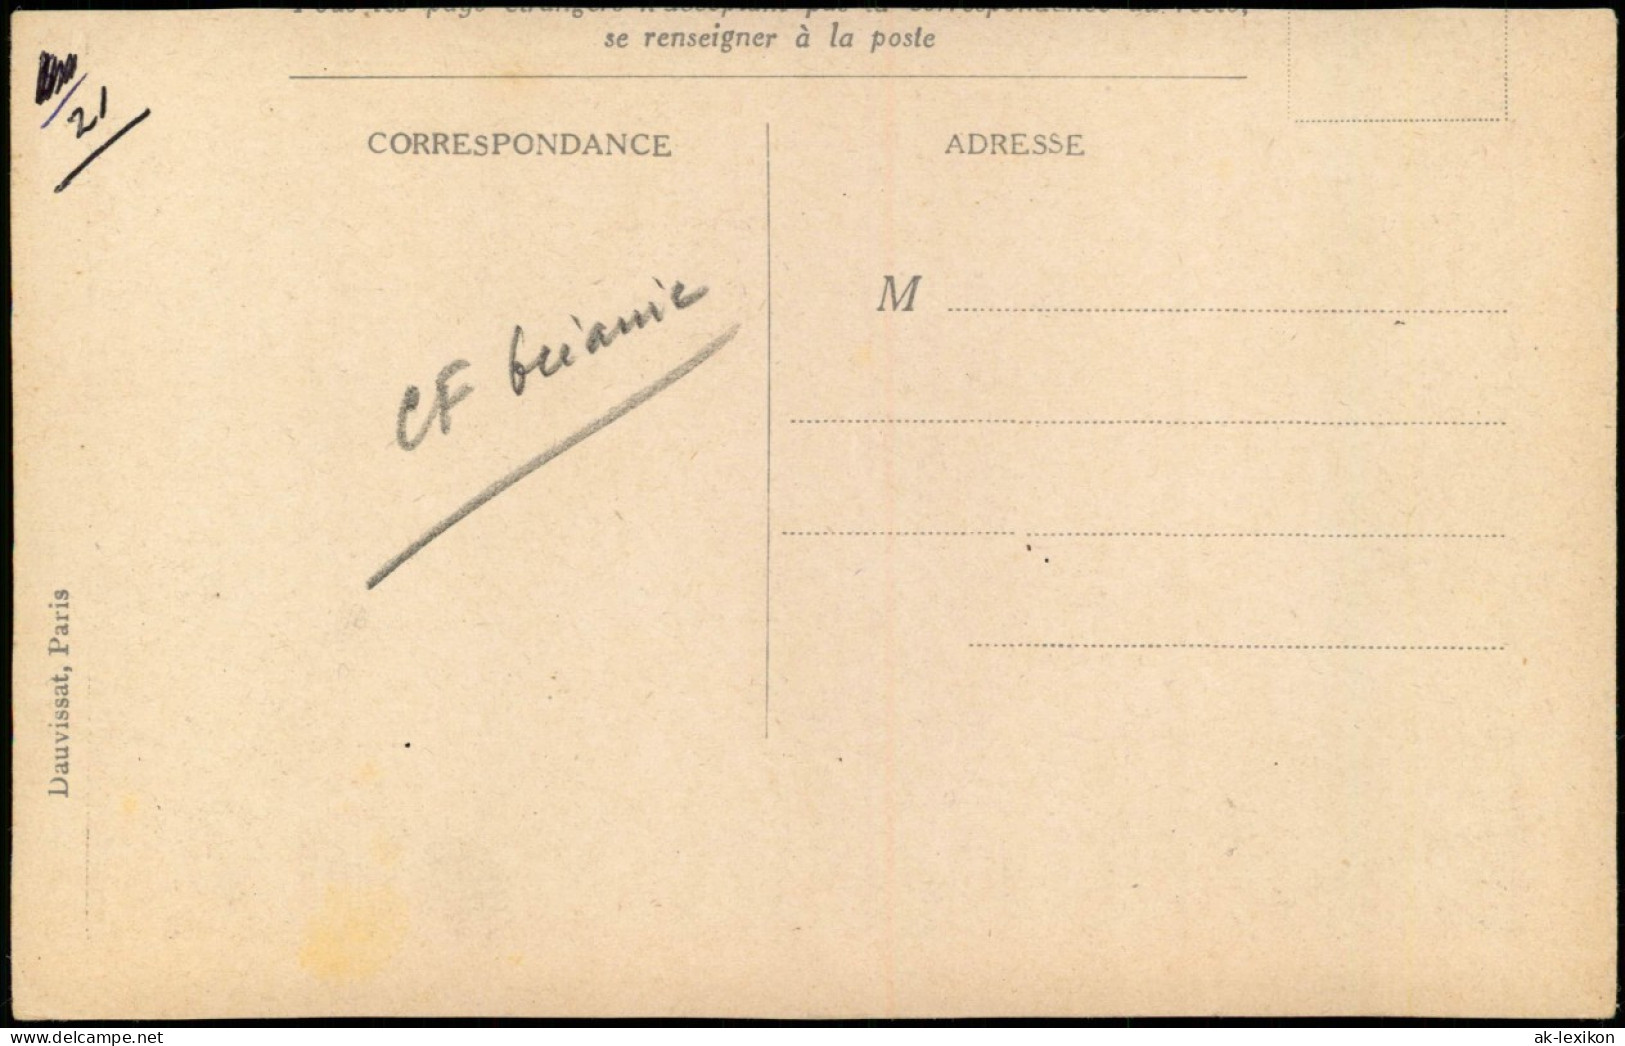 Französisch Polynesien PAYSAGE DE RAIATEA (lles De La Société).   1912 - Frans-Polynesië